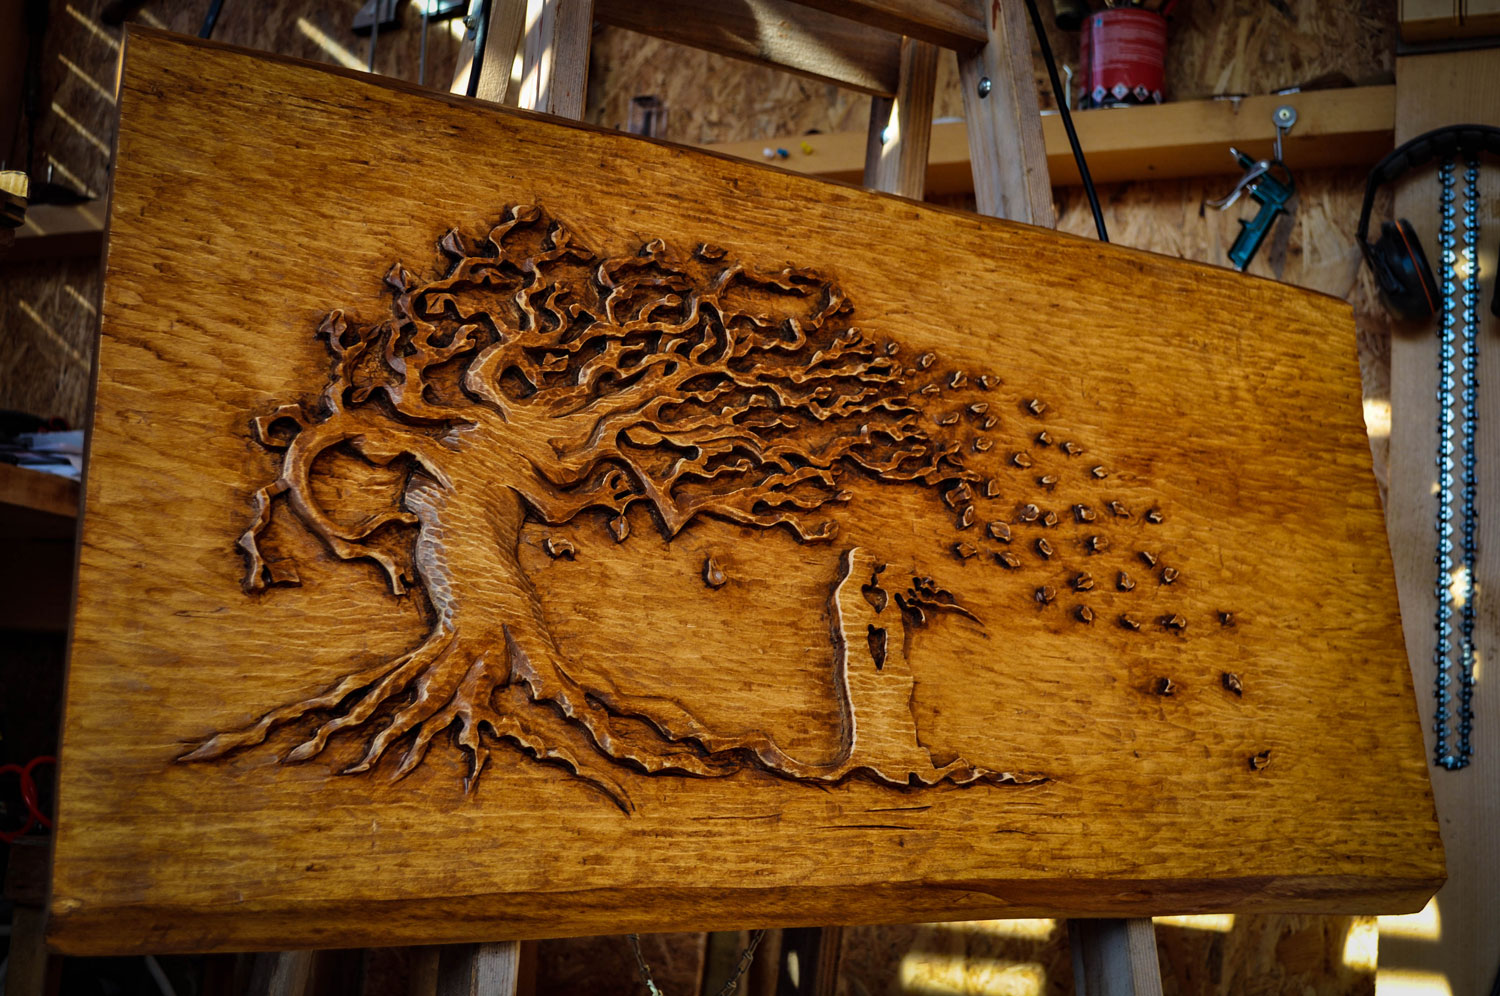 drevorezba-vyrezavani-rezani-carving-wood-drevo-obraz-strom-treeoflife-rdekzdrazil-03